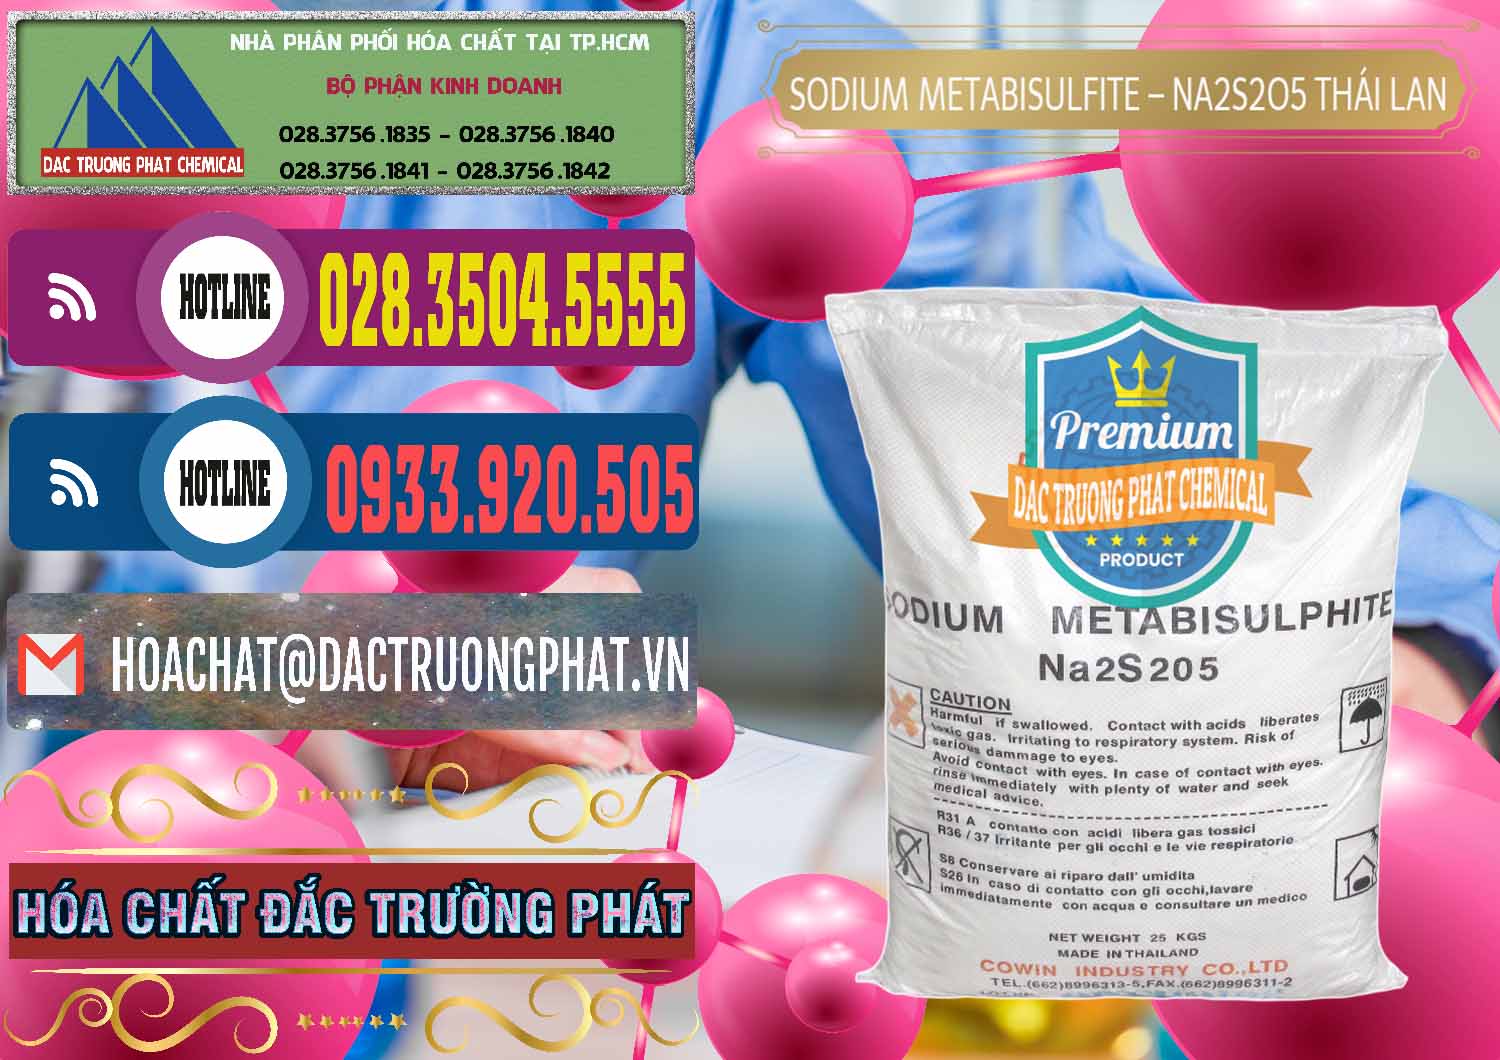 Cty chuyên phân phối - bán Sodium Metabisulfite - NA2S2O5 Thái Lan Cowin - 0145 - Nhà cung cấp & phân phối hóa chất tại TP.HCM - muabanhoachat.com.vn